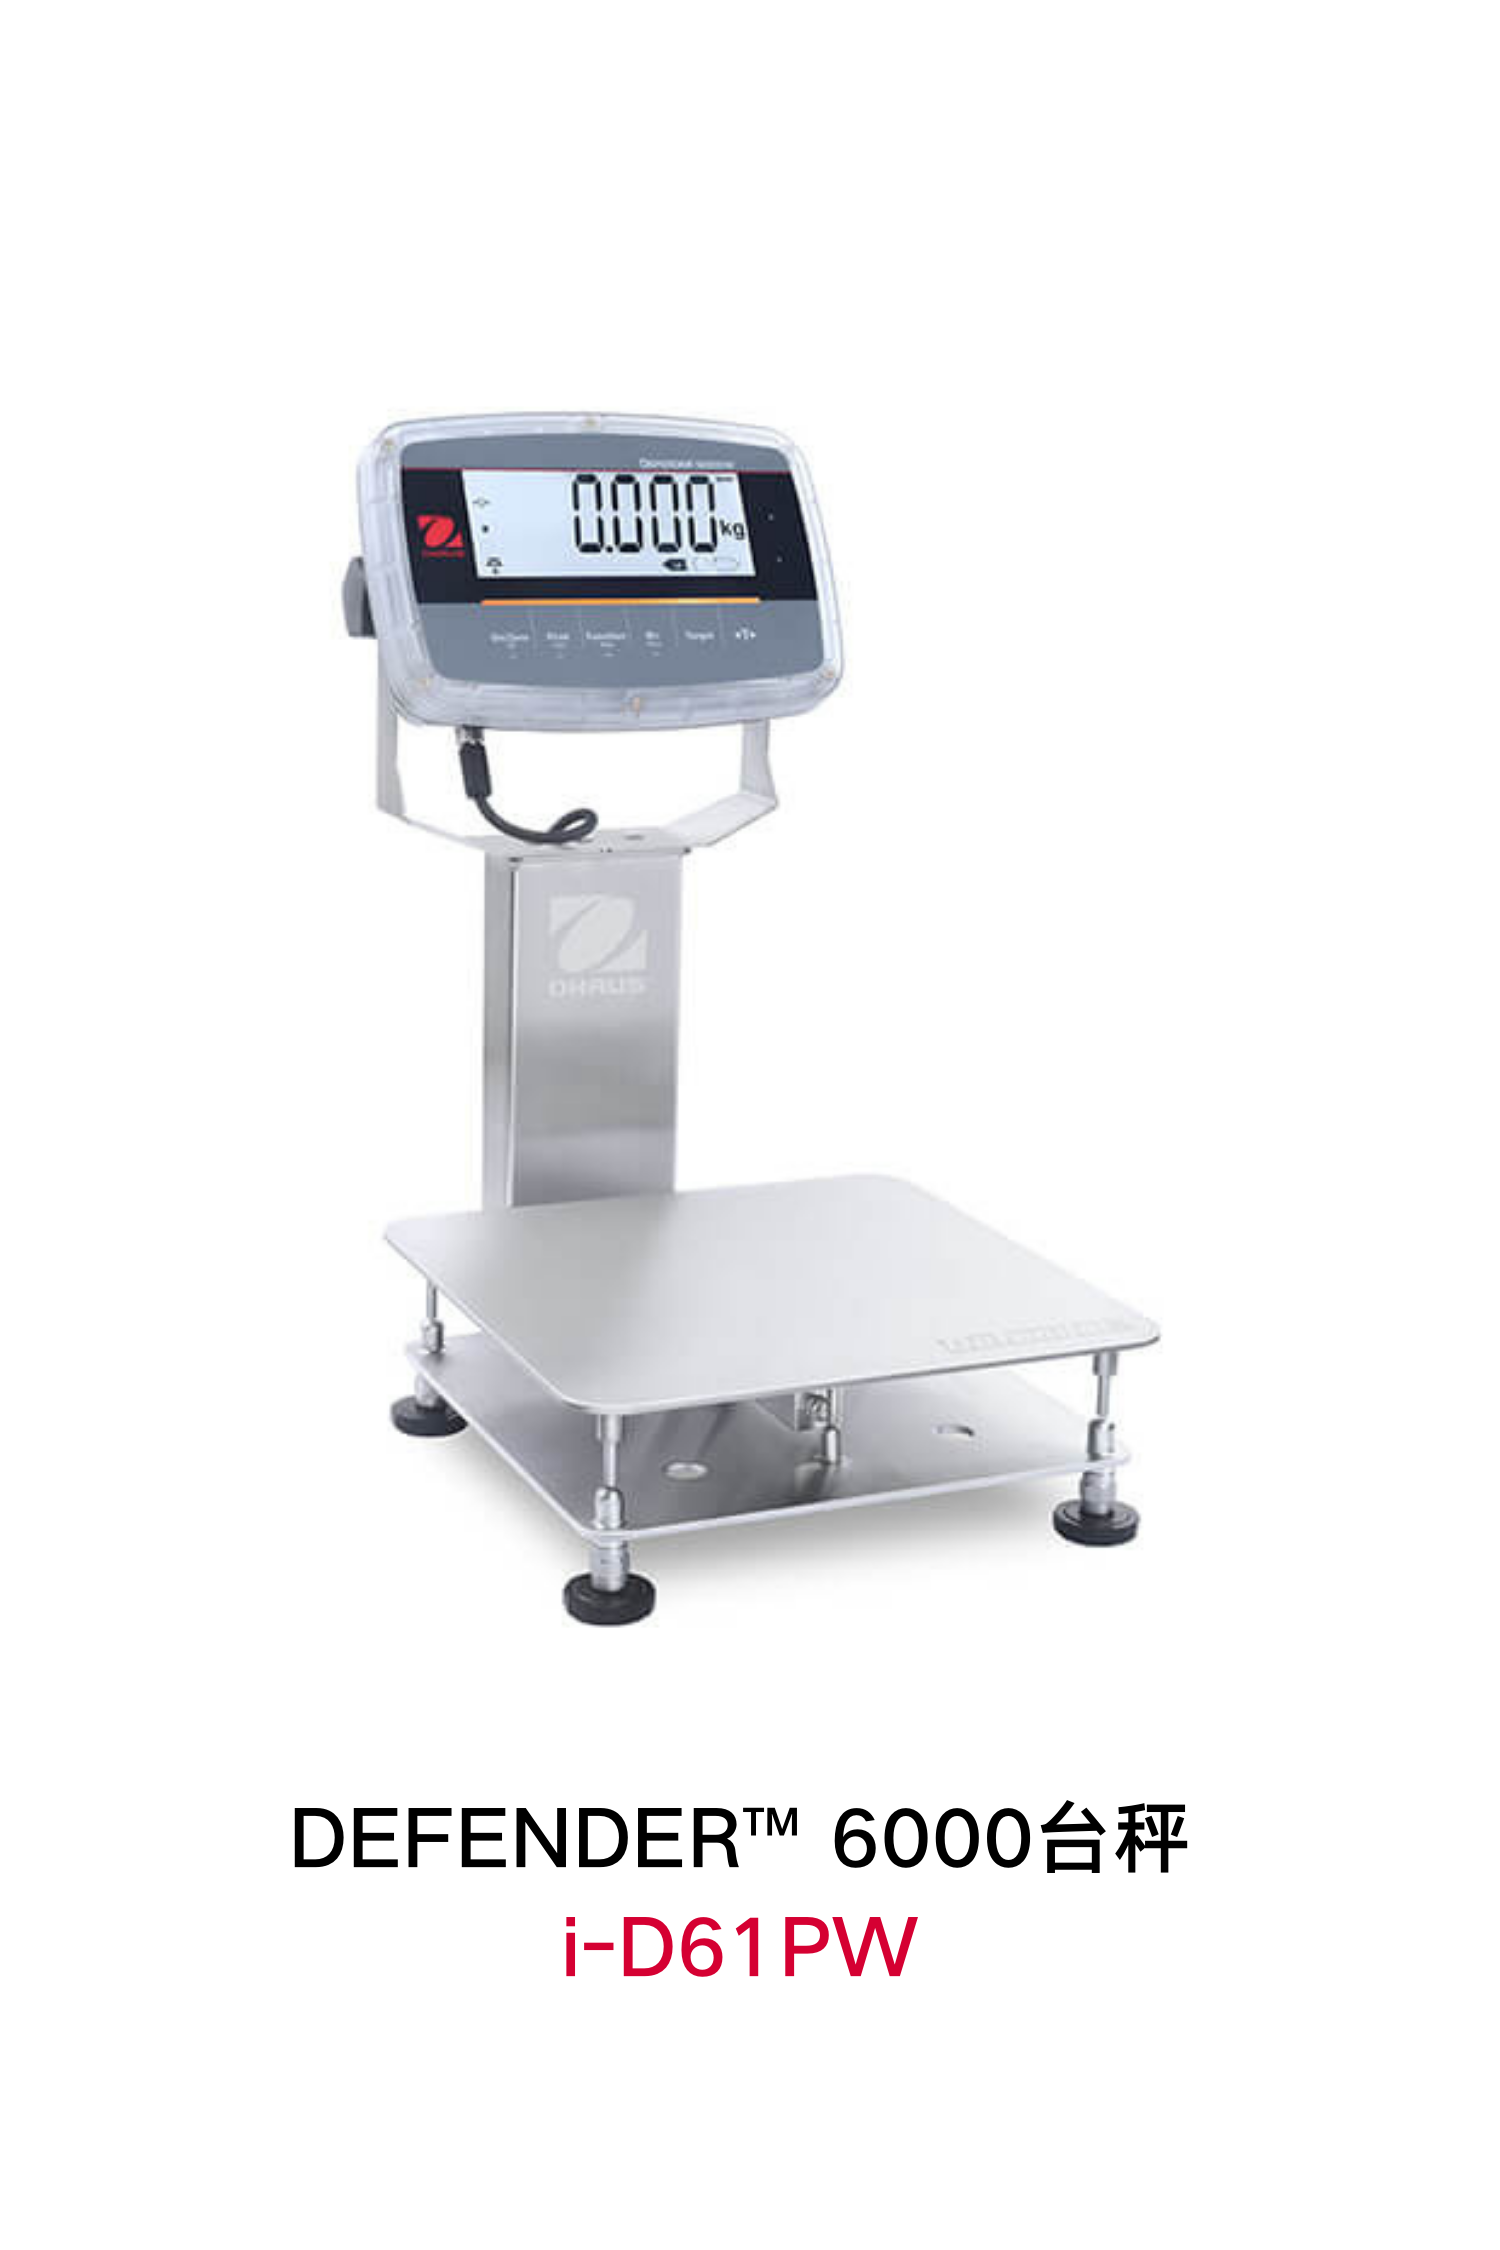 DEFENDER-6000-I-D61XW-不锈钢防水台秤-(3).png